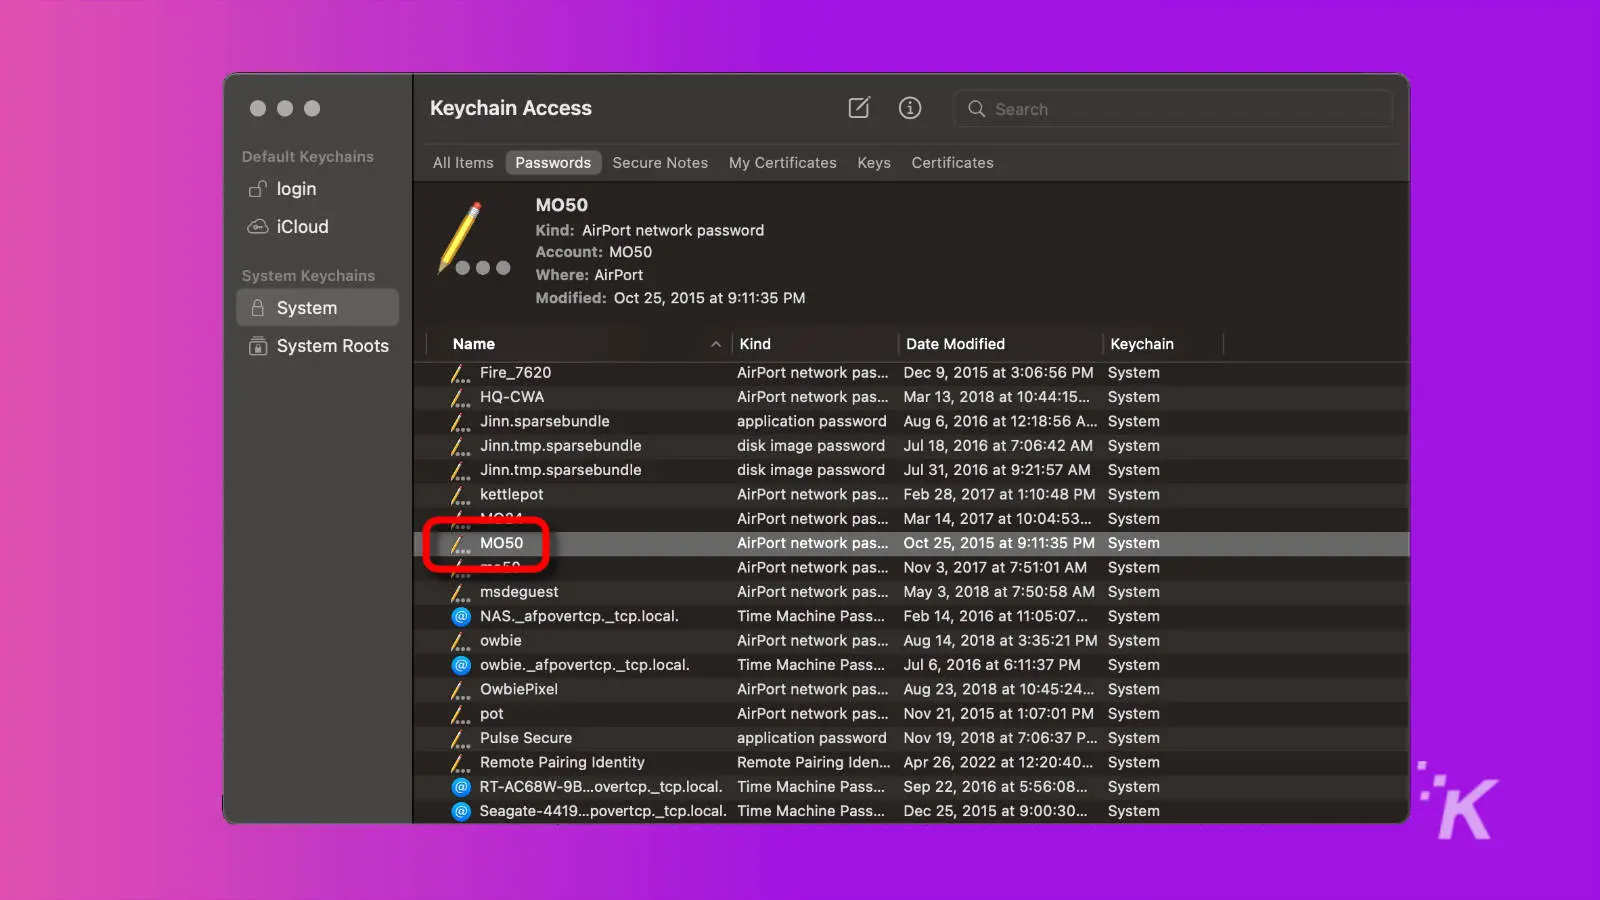 captura de pantalla de la aplicación de acceso al llavero macos con el nombre de la contraseña wifi resaltado